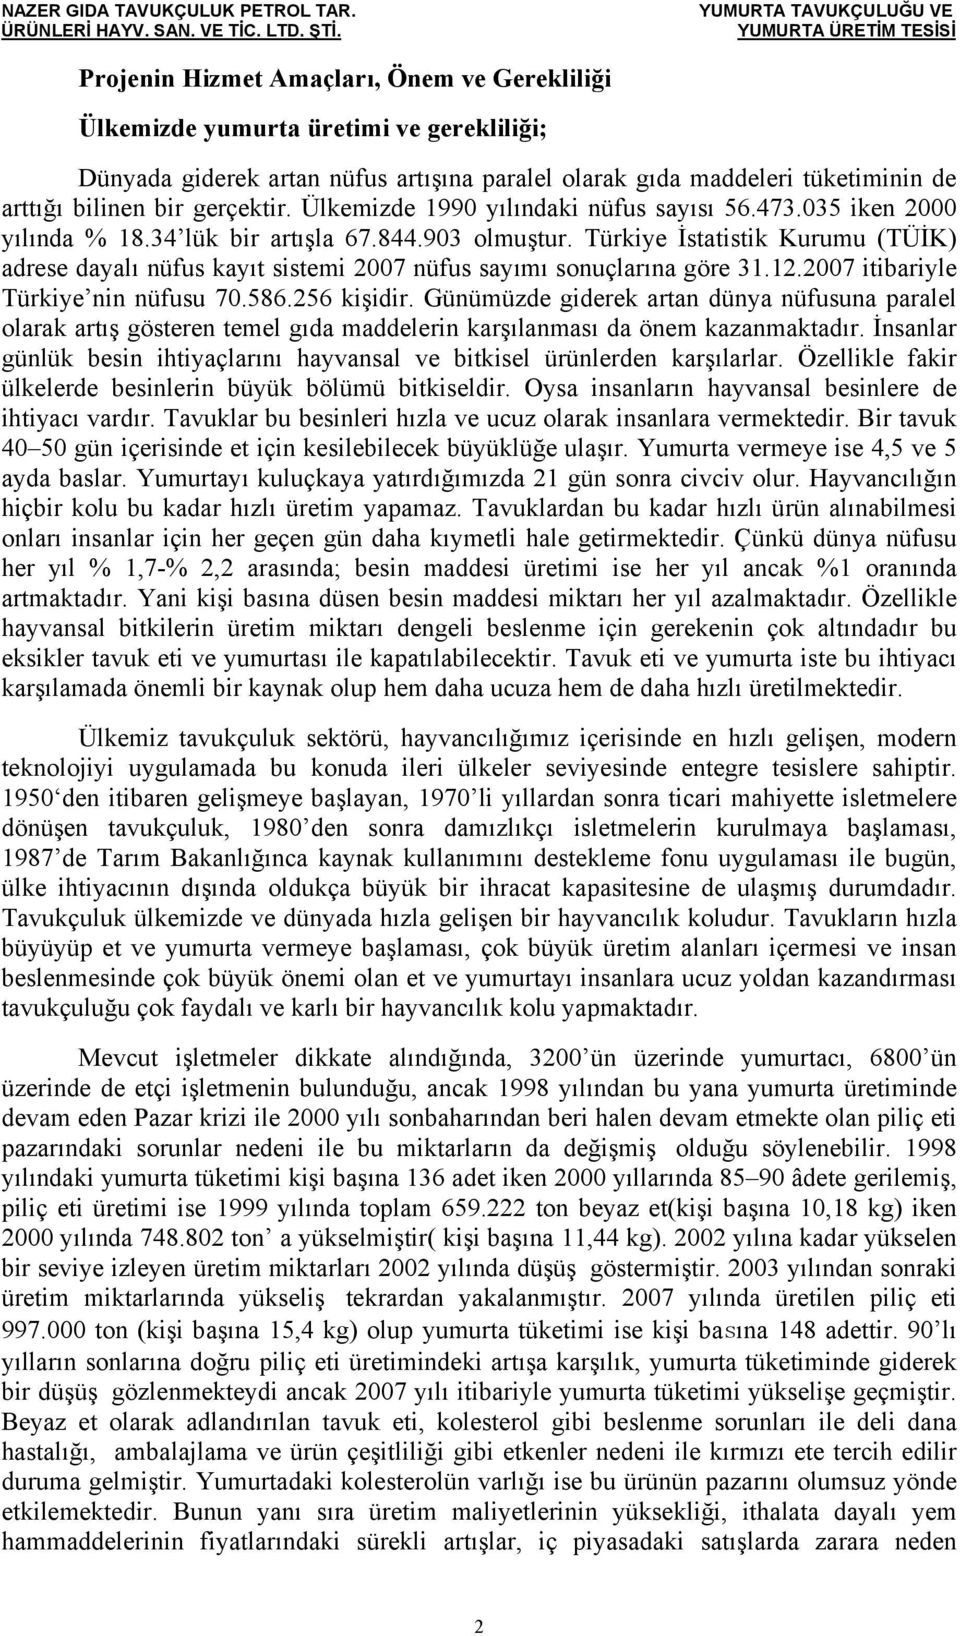 Türkiye İstatistik Kurumu (TÜİK) adrese dayalı nüfus kayıt sistemi 2007 nüfus sayımı sonuçlarına göre 31.12.2007 itibariyle Türkiye nin nüfusu 70.586.256 kişidir.